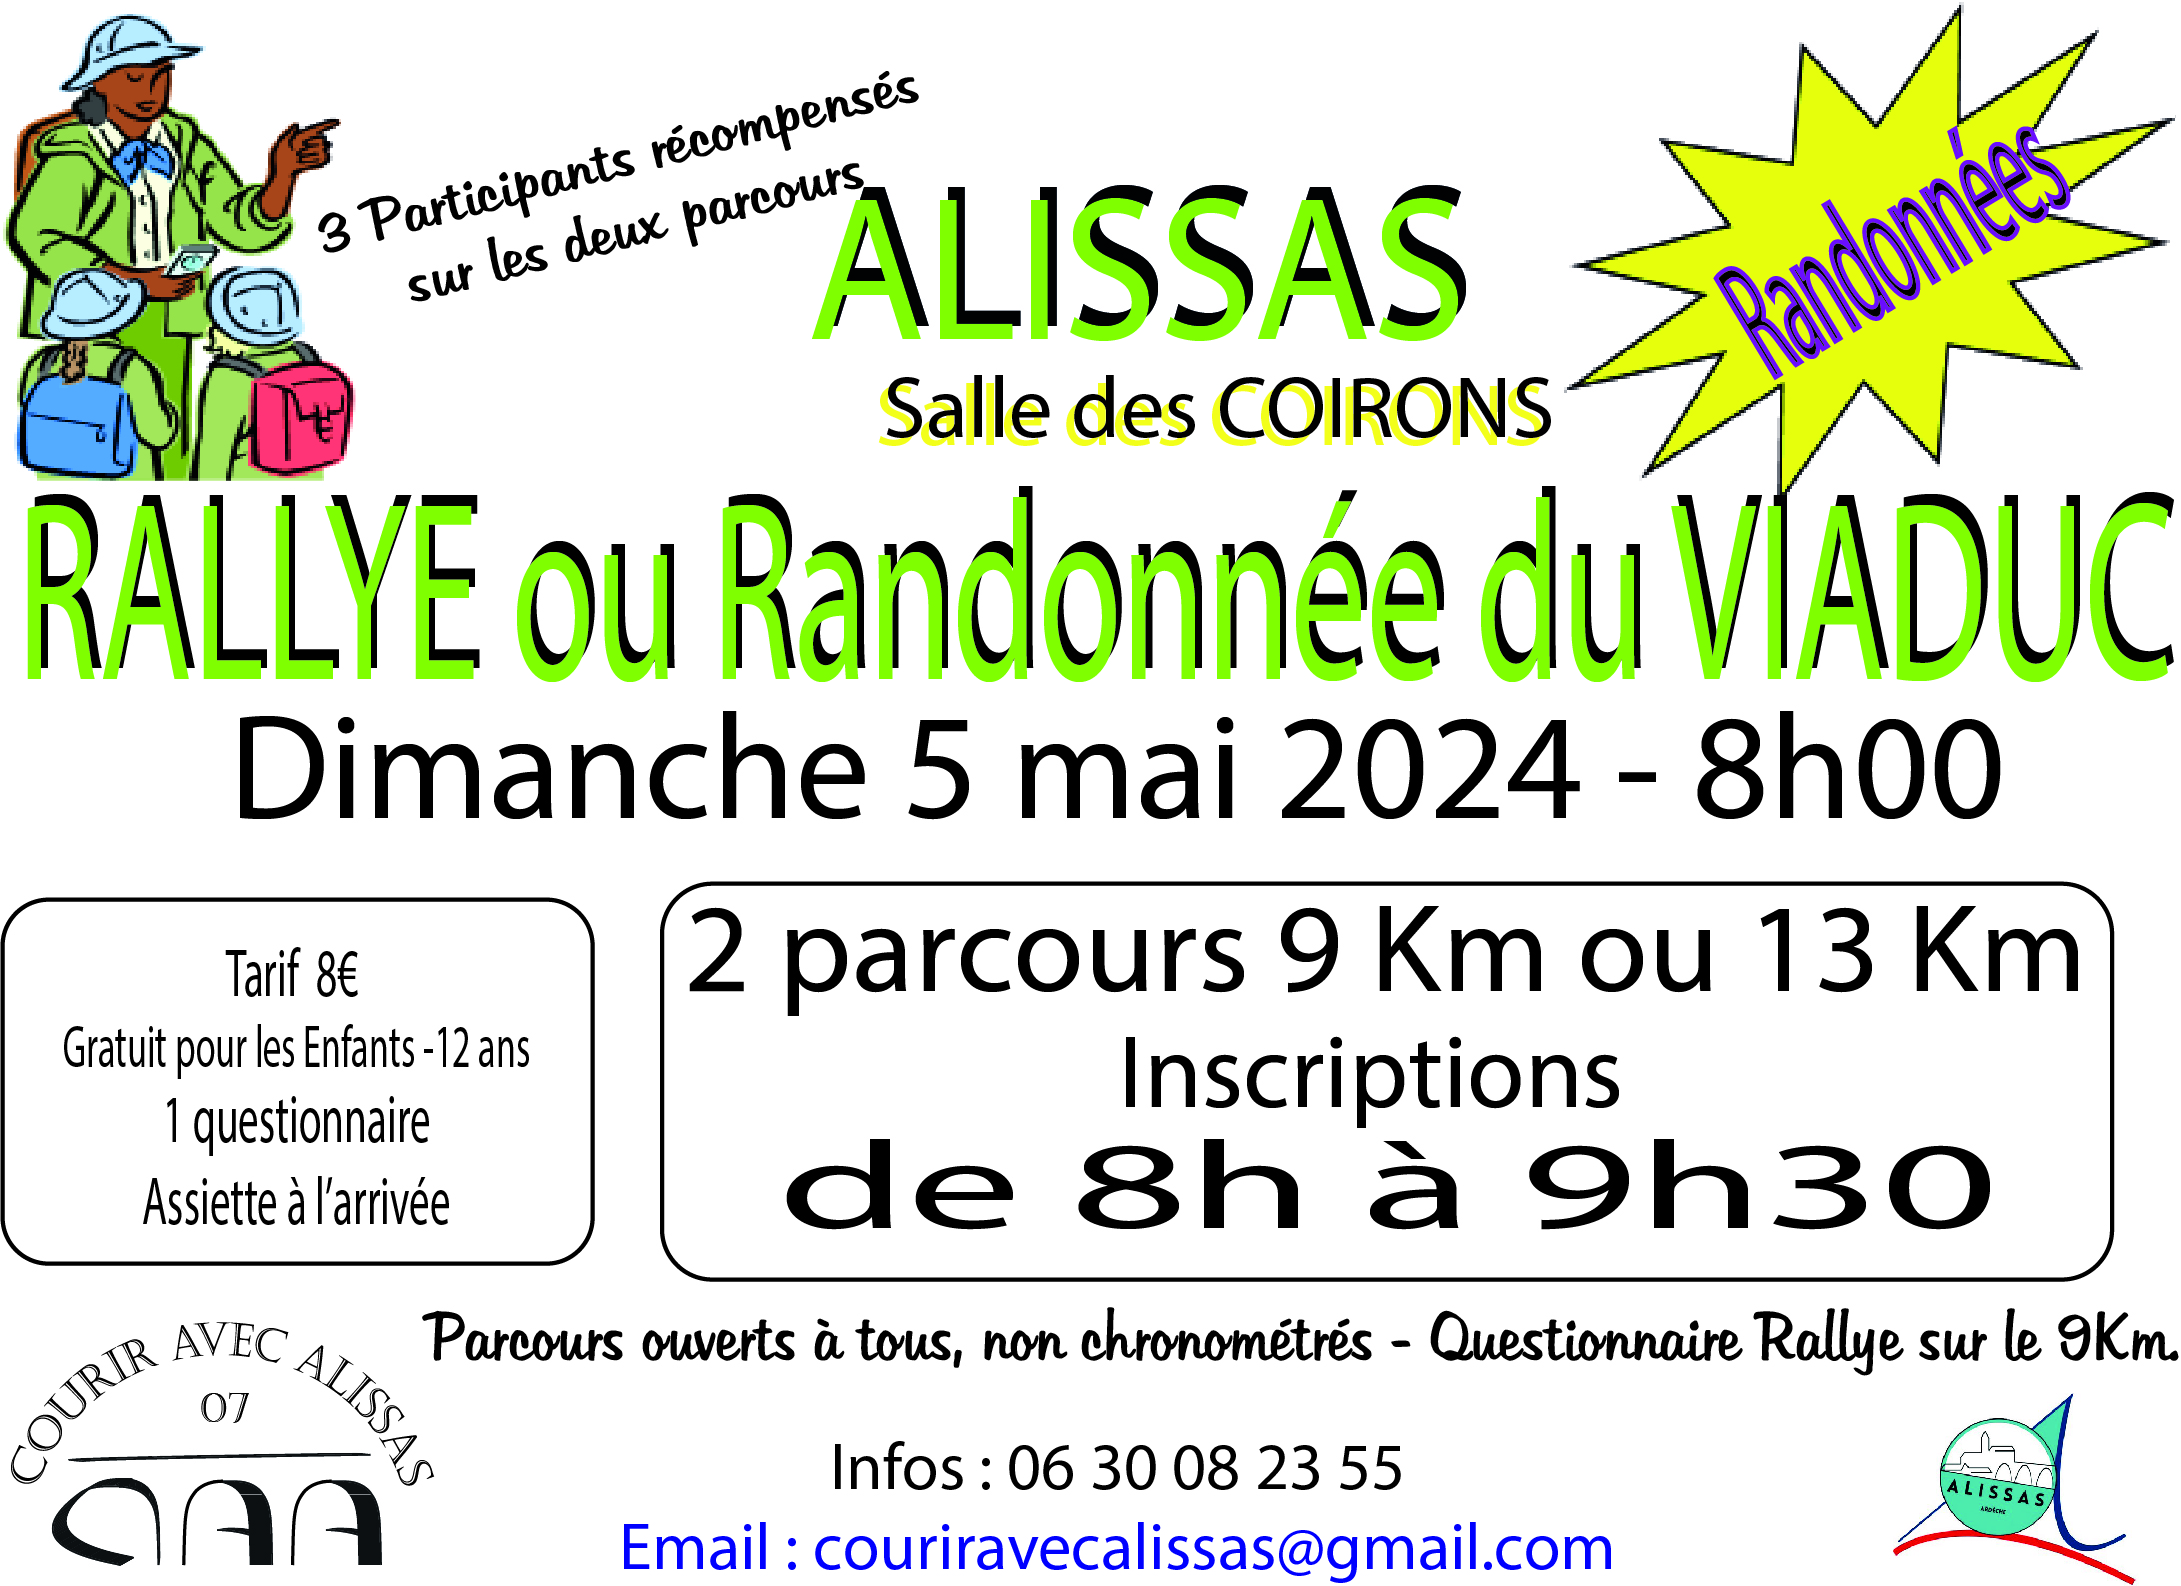 Events…Put it in your diary : Rallye ou randonnée du Viaduc